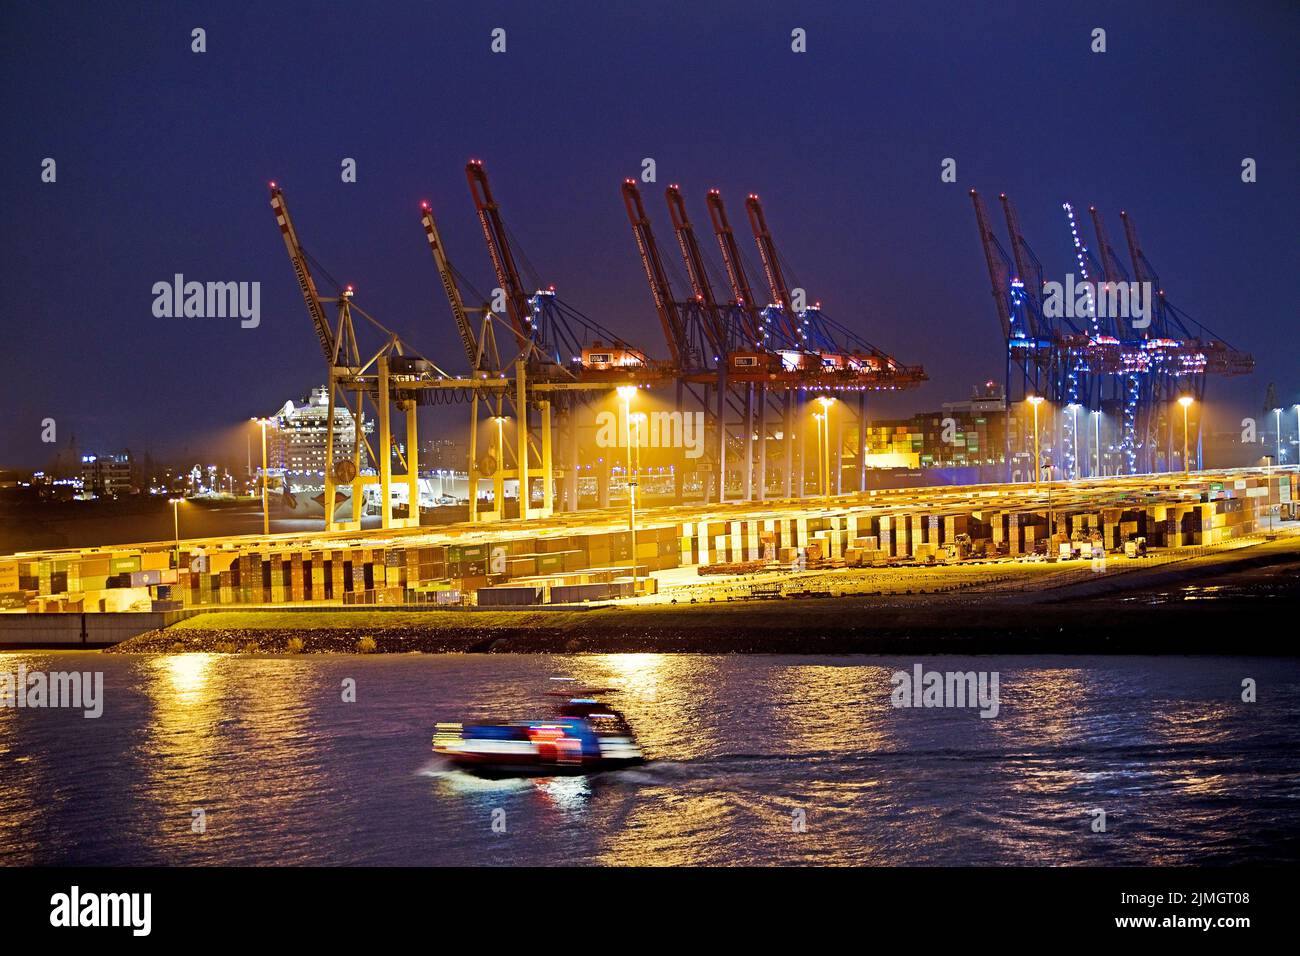 Grues de chargement au terminal à conteneurs de Tollerort dans la soirée, Port de Hambourg, Allemagne Banque D'Images